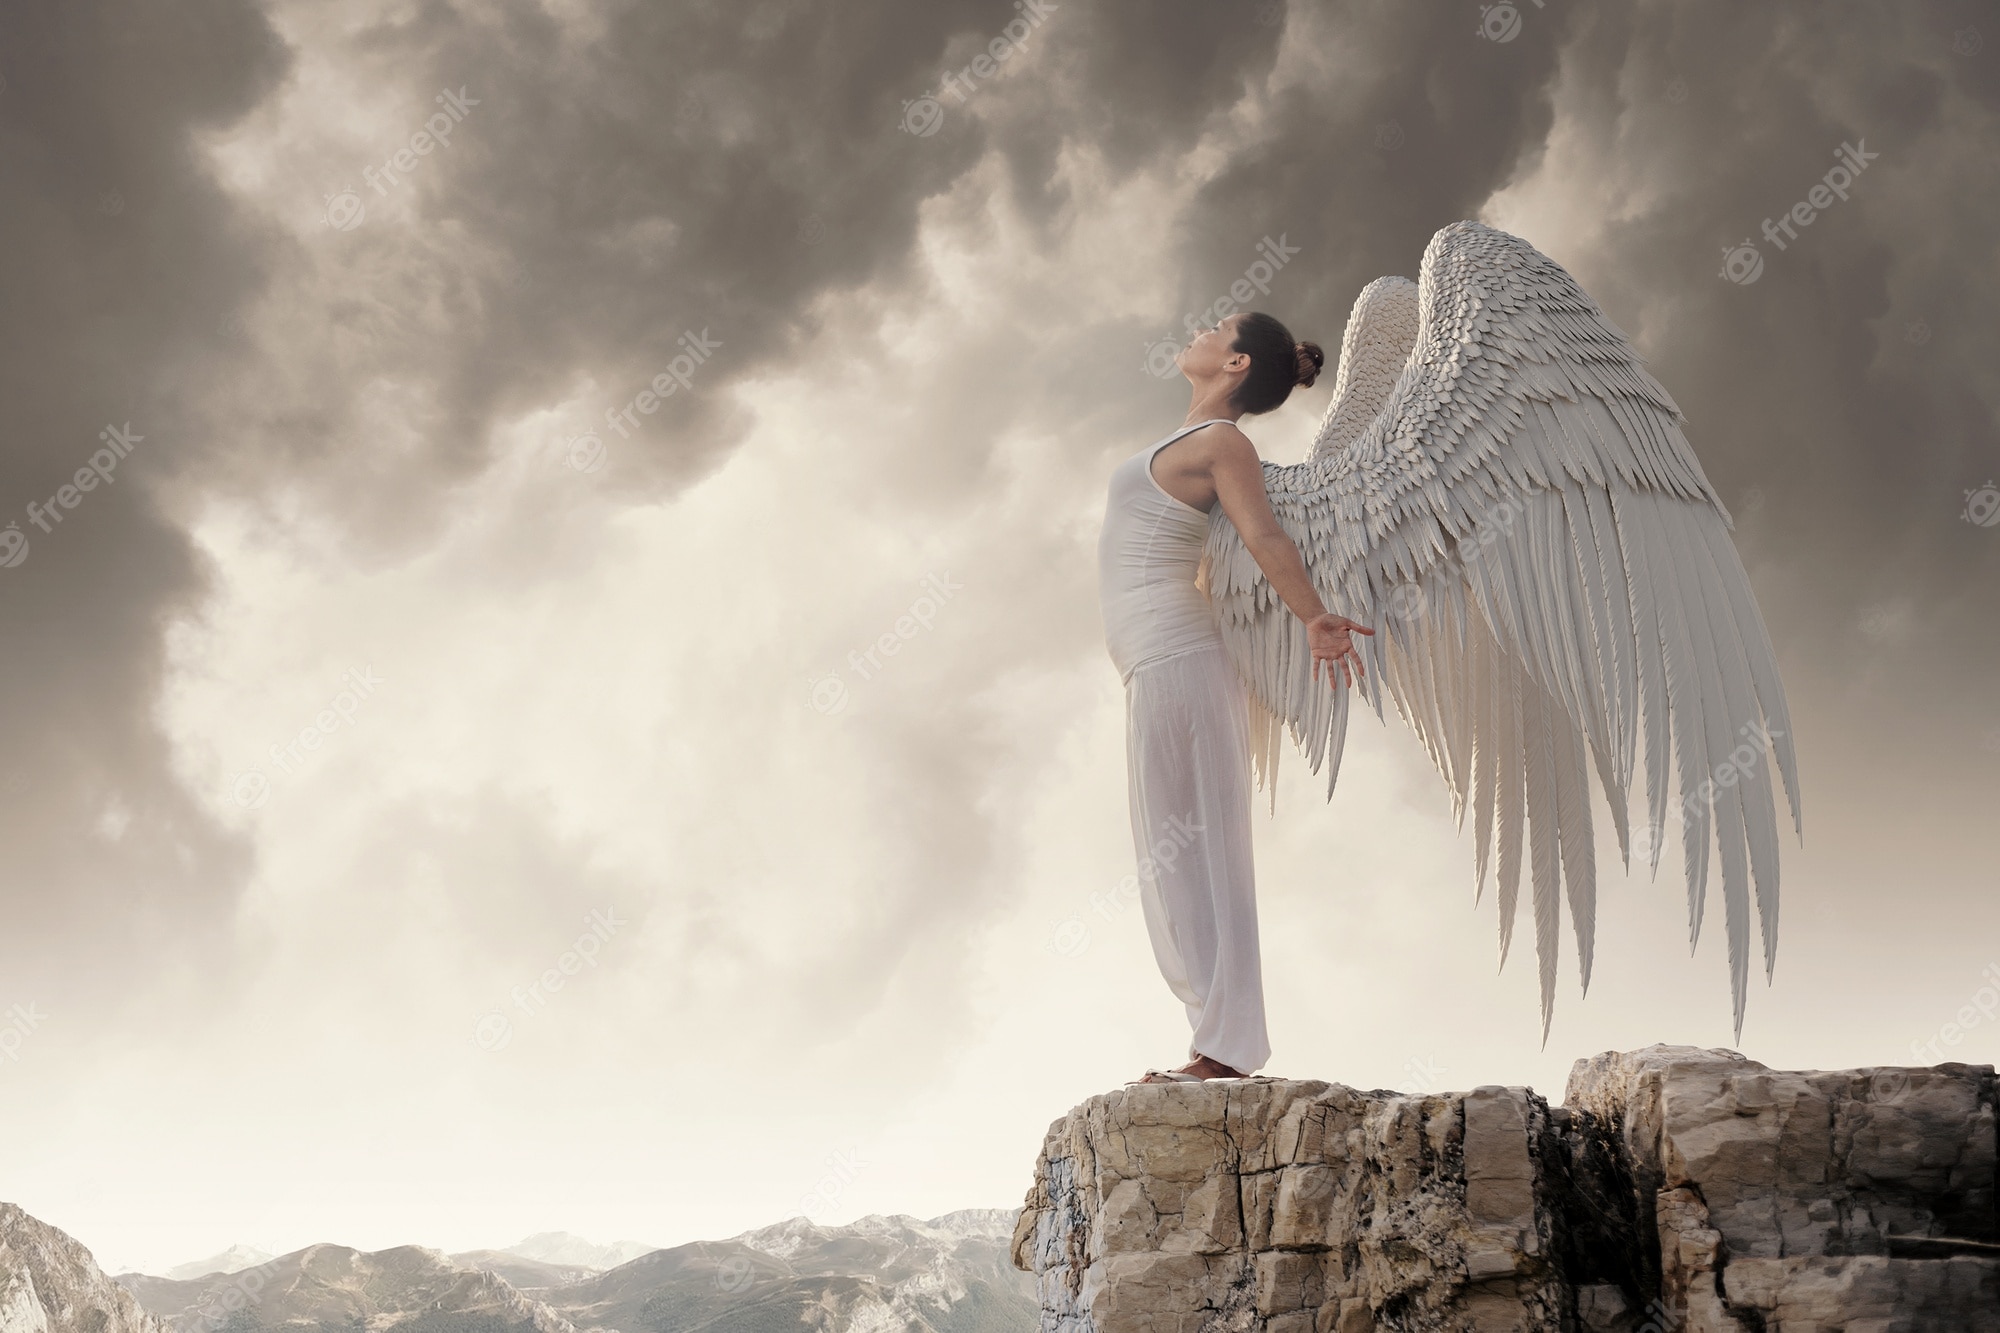 Angel Heaven Image